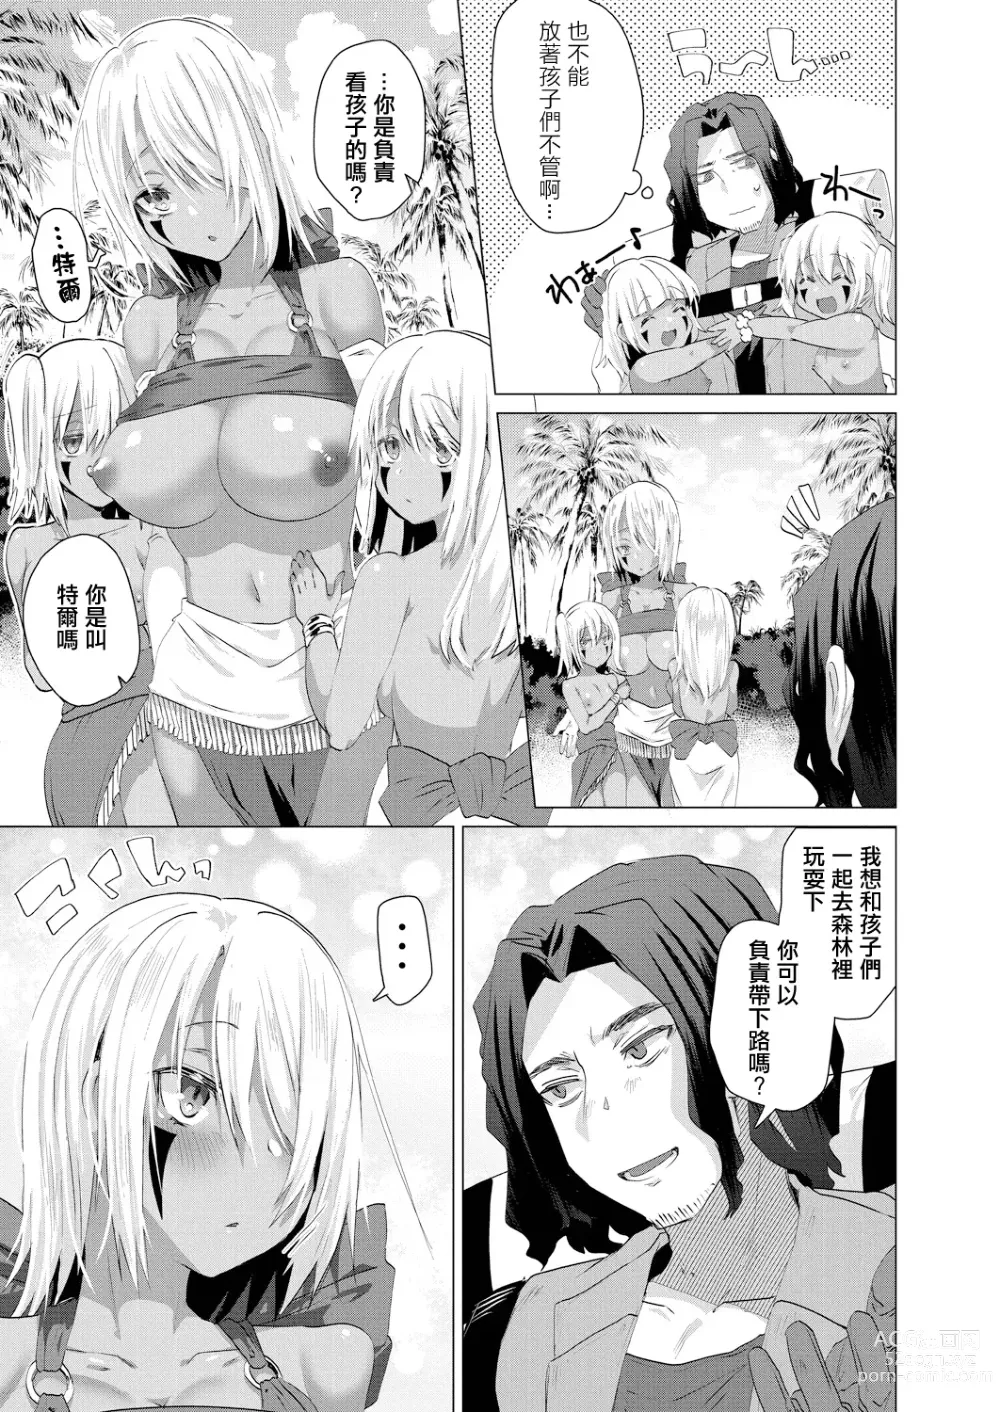 Page 5 of manga Kassyoku Musume no Harem Shima - Harem Island of Brown Girl Ch. 3